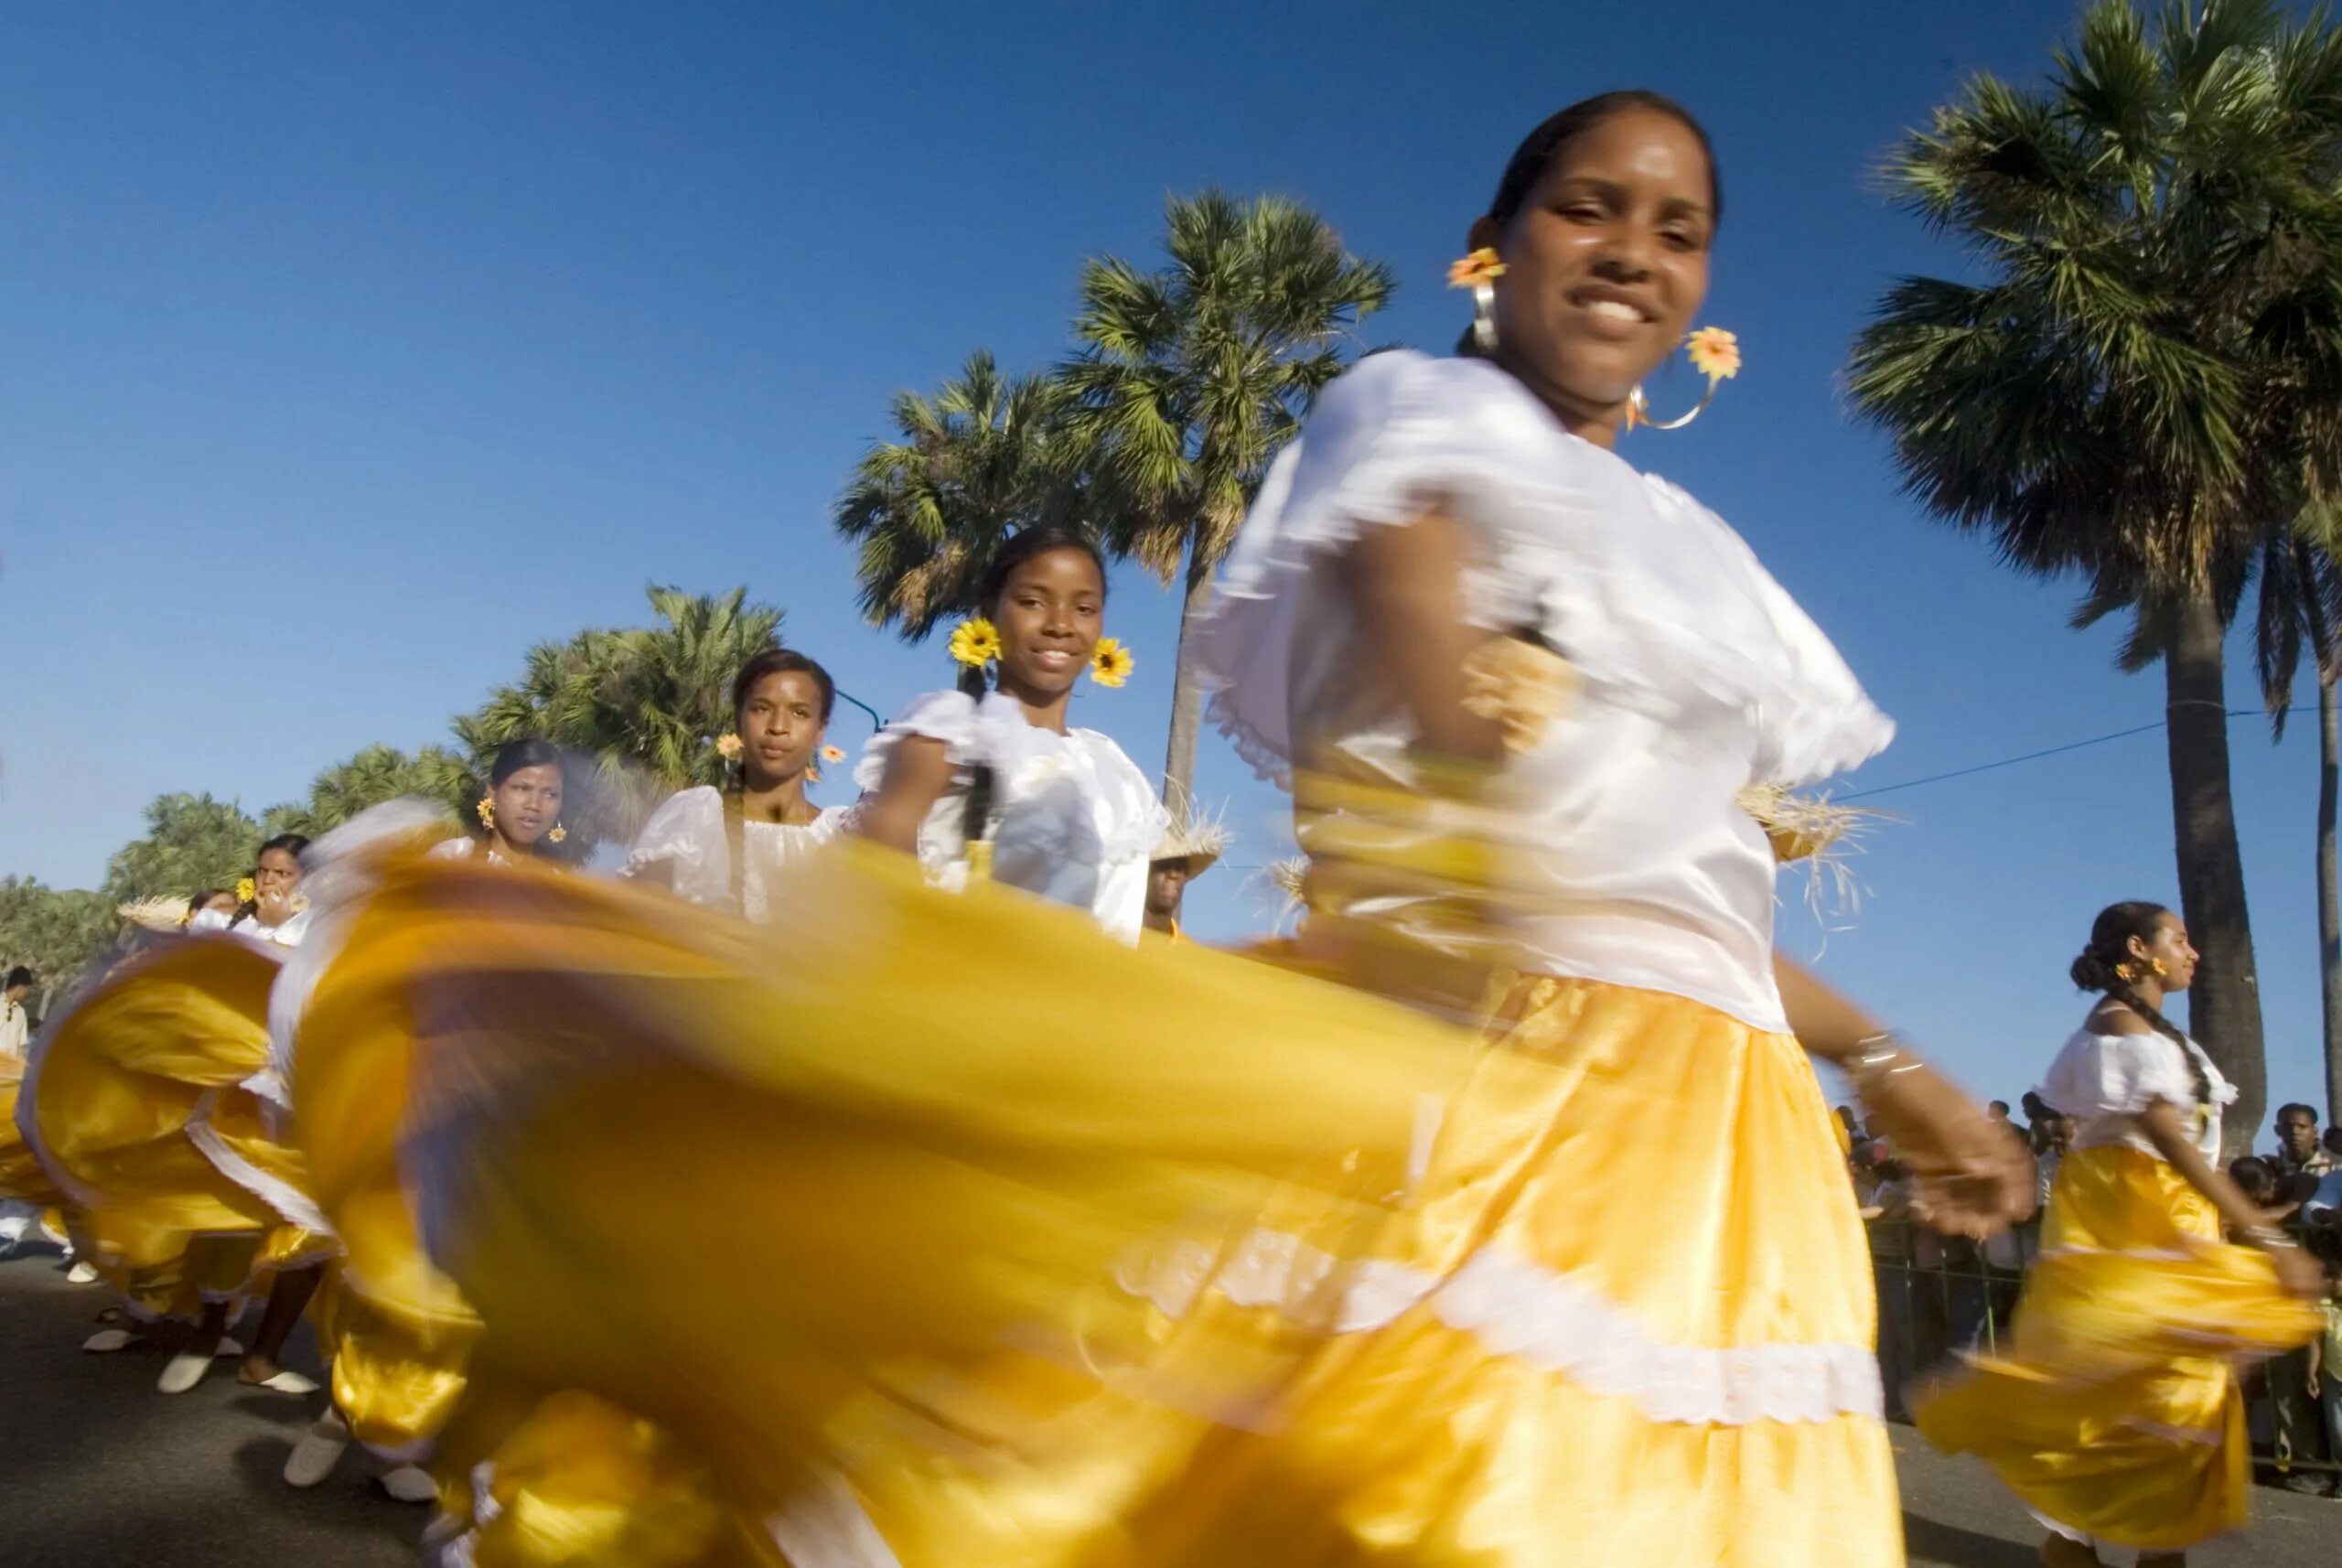 Меренге танец. Меренге танец Доминикана. Танец меренге в Доминикане. Доминикана фестиваль меренге. Санто-Доминго Доминиканская Республика.